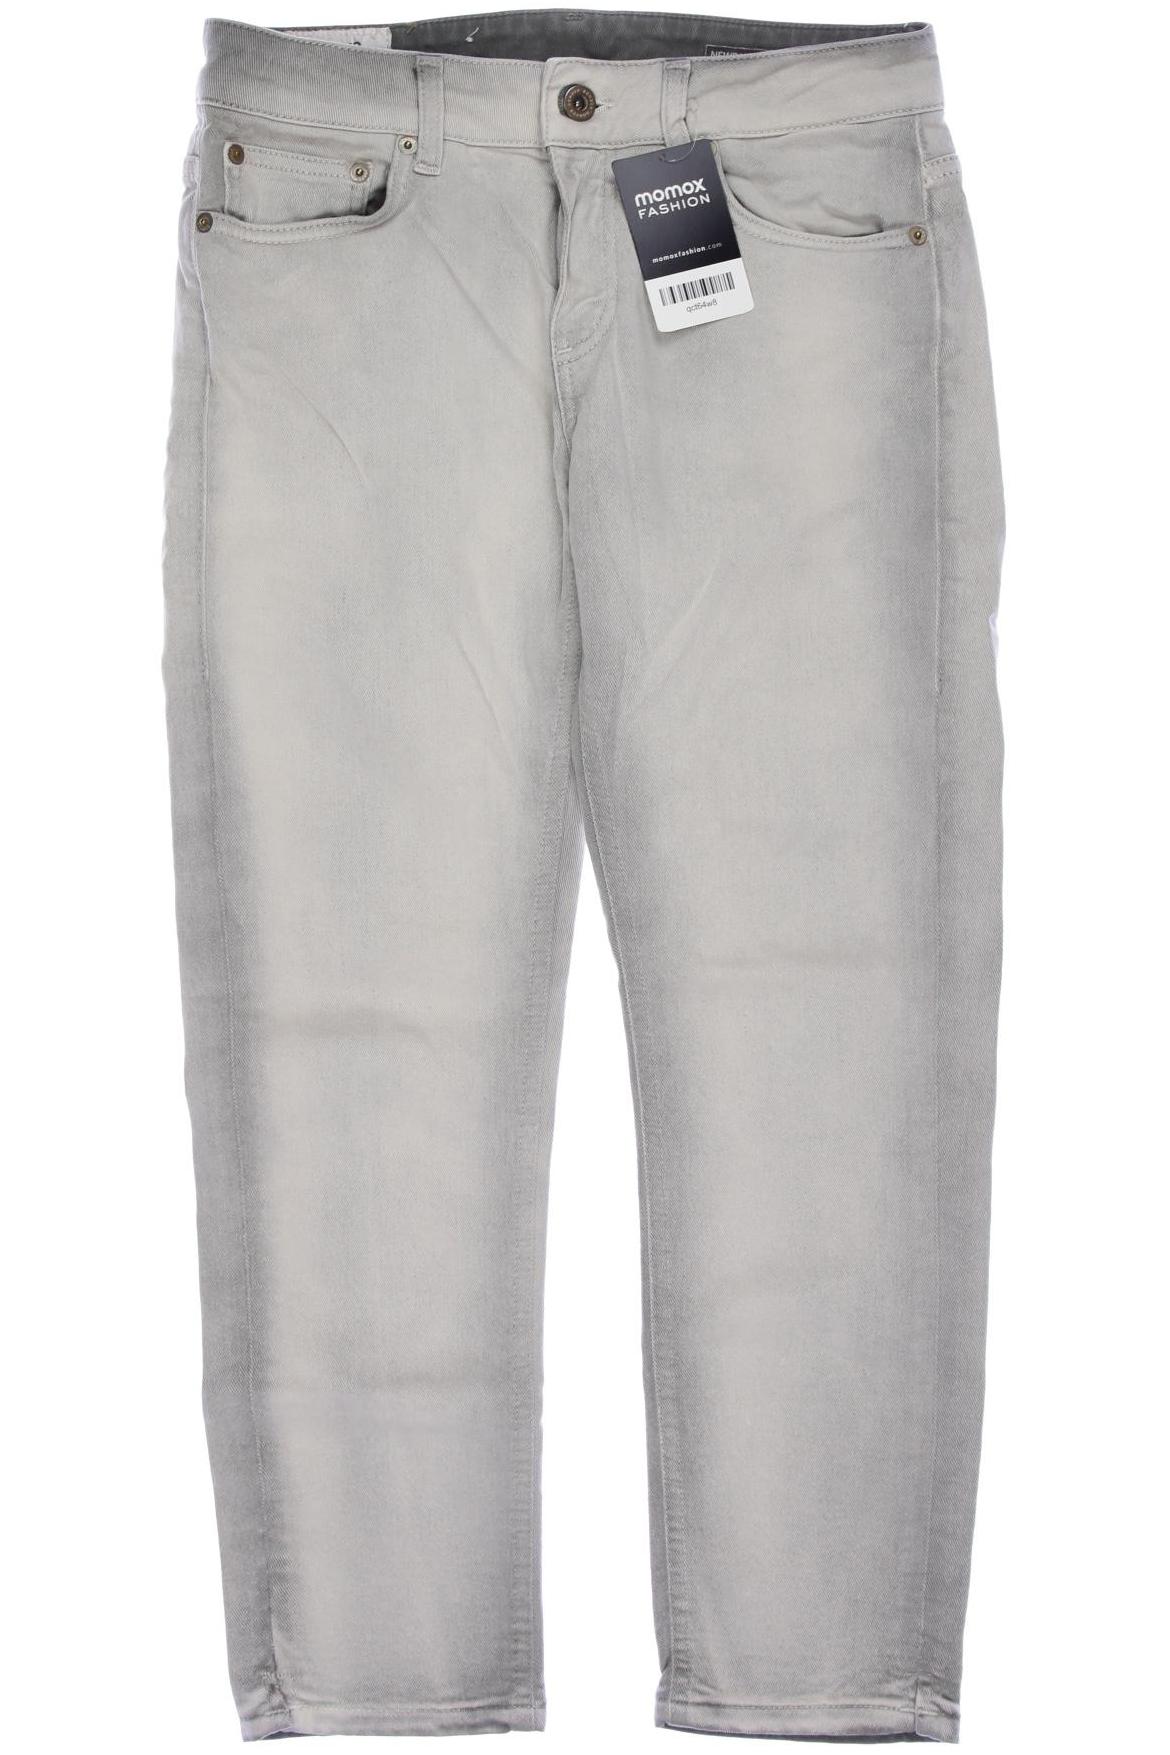 Dondup Damen Jeans, grau, Gr. 38 von Dondup